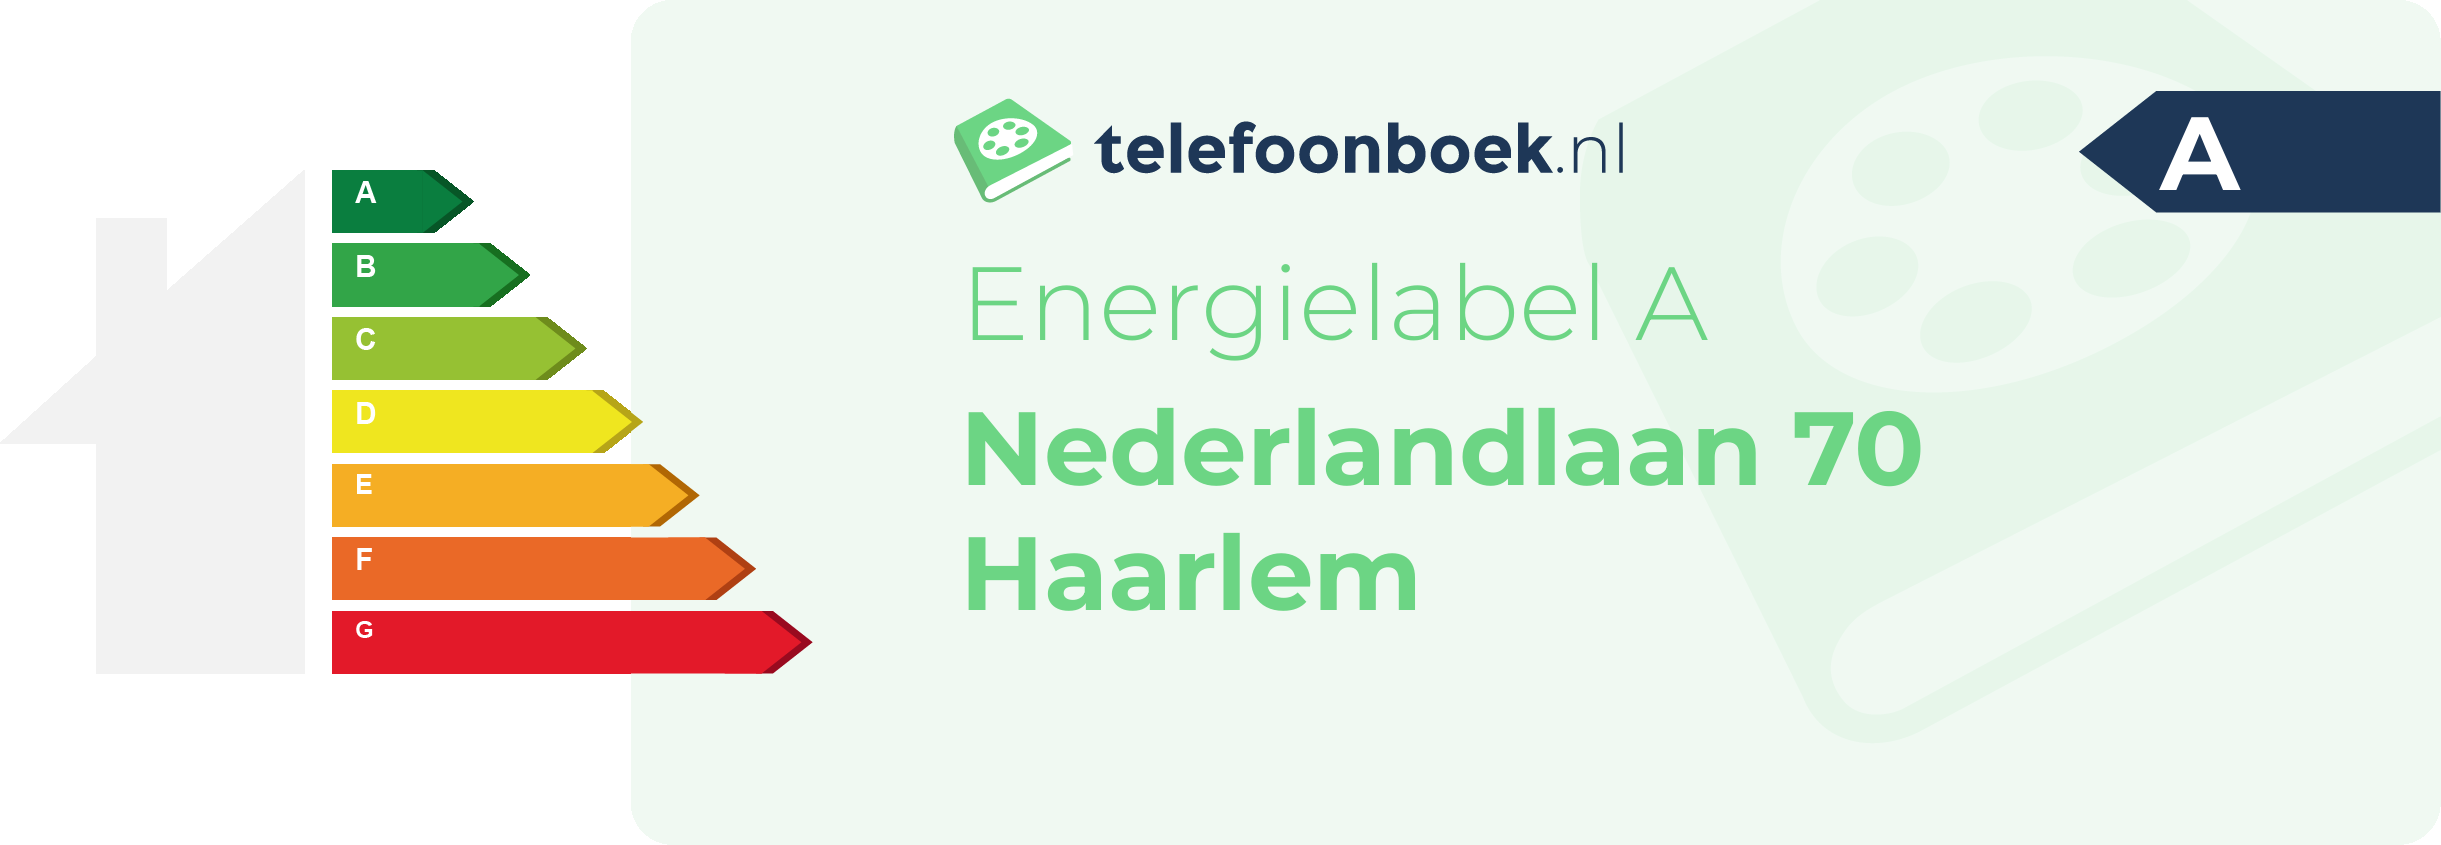 Energielabel Nederlandlaan 70 Haarlem